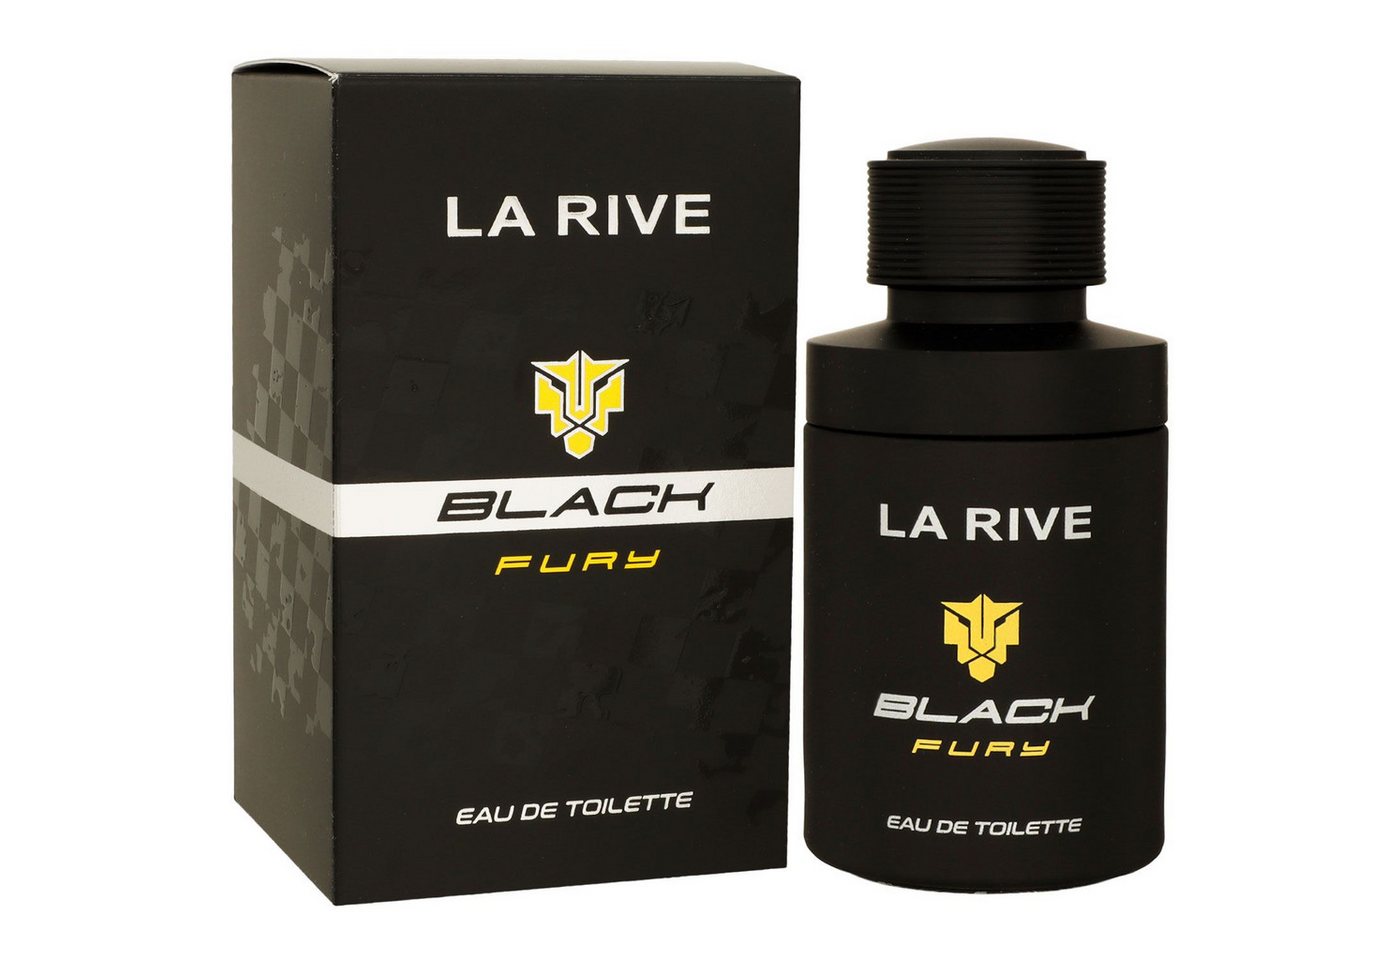 La Rive Eau de Toilette Black Fury 75 ml von La Rive